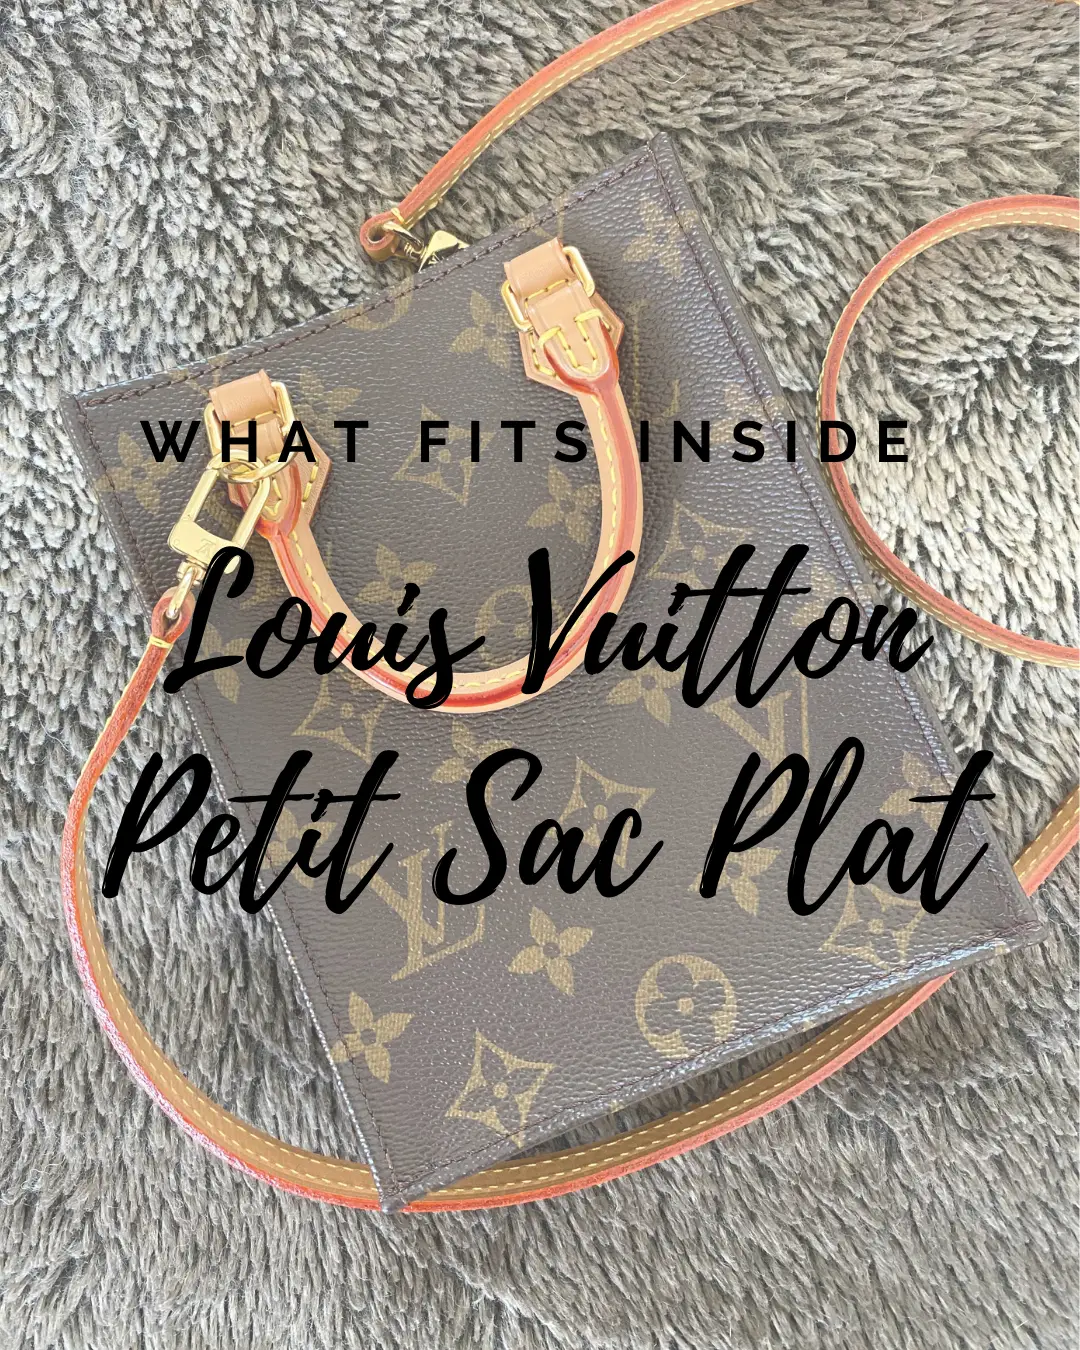 LOUIS VUITTON PETIT SAC PLAT UNBOXING + WHAT FITS INSIDE 